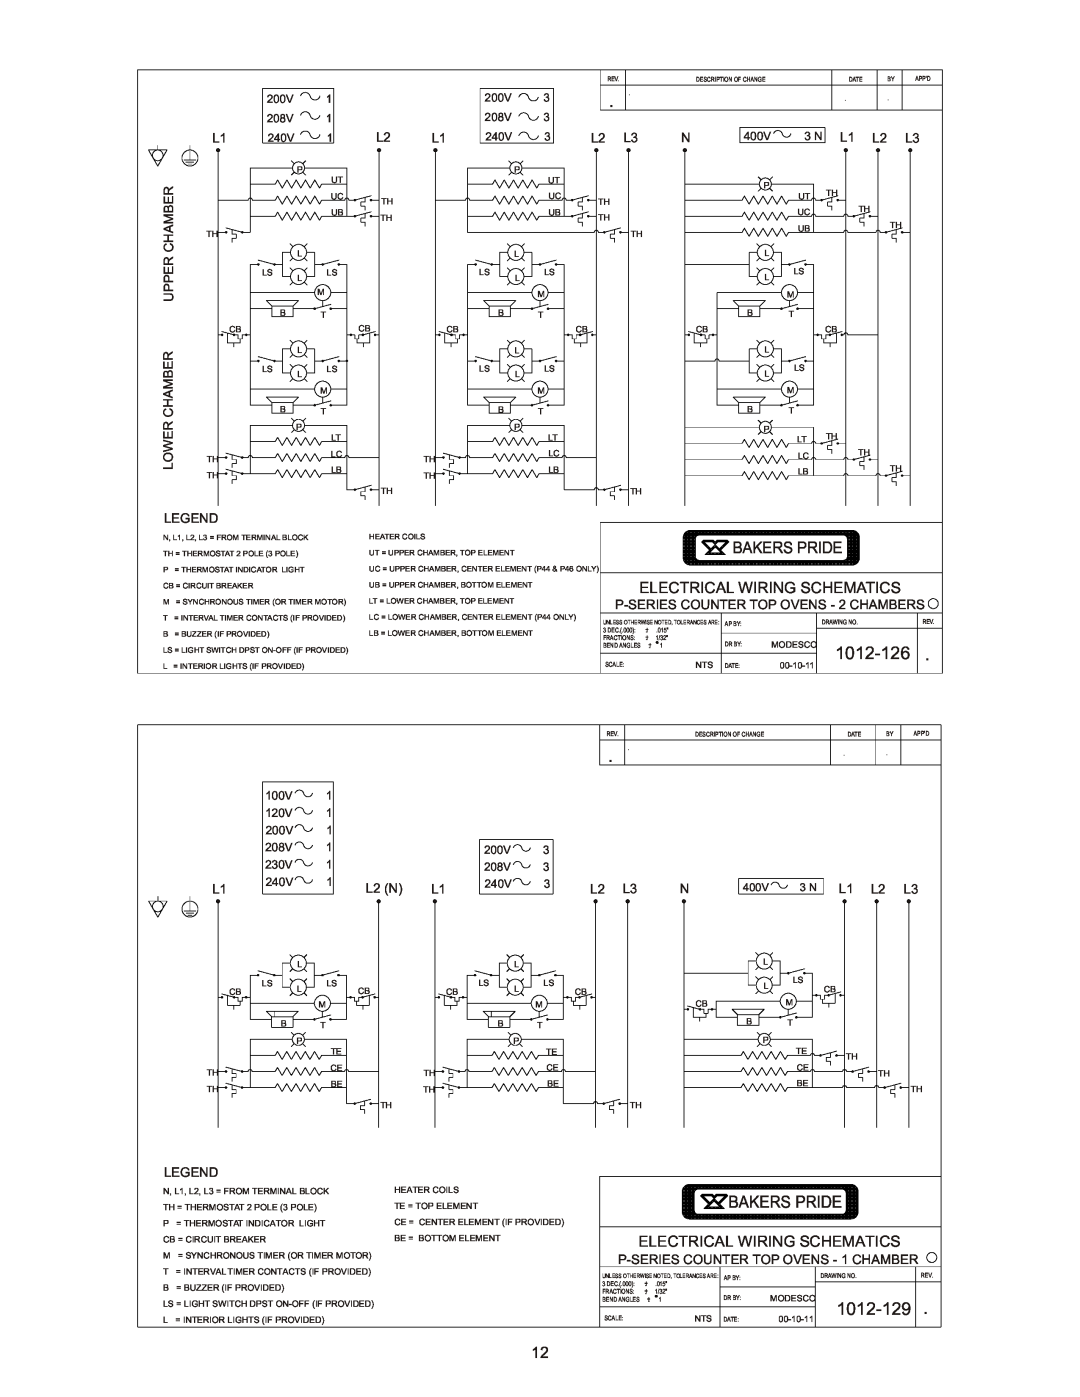 Bakers Pride Oven BK-18, PX-16, P-44BL, P44S, P-24S, P48S 1012-126, 1012-129, Bakers Pride Electrical Wiring Schematics 